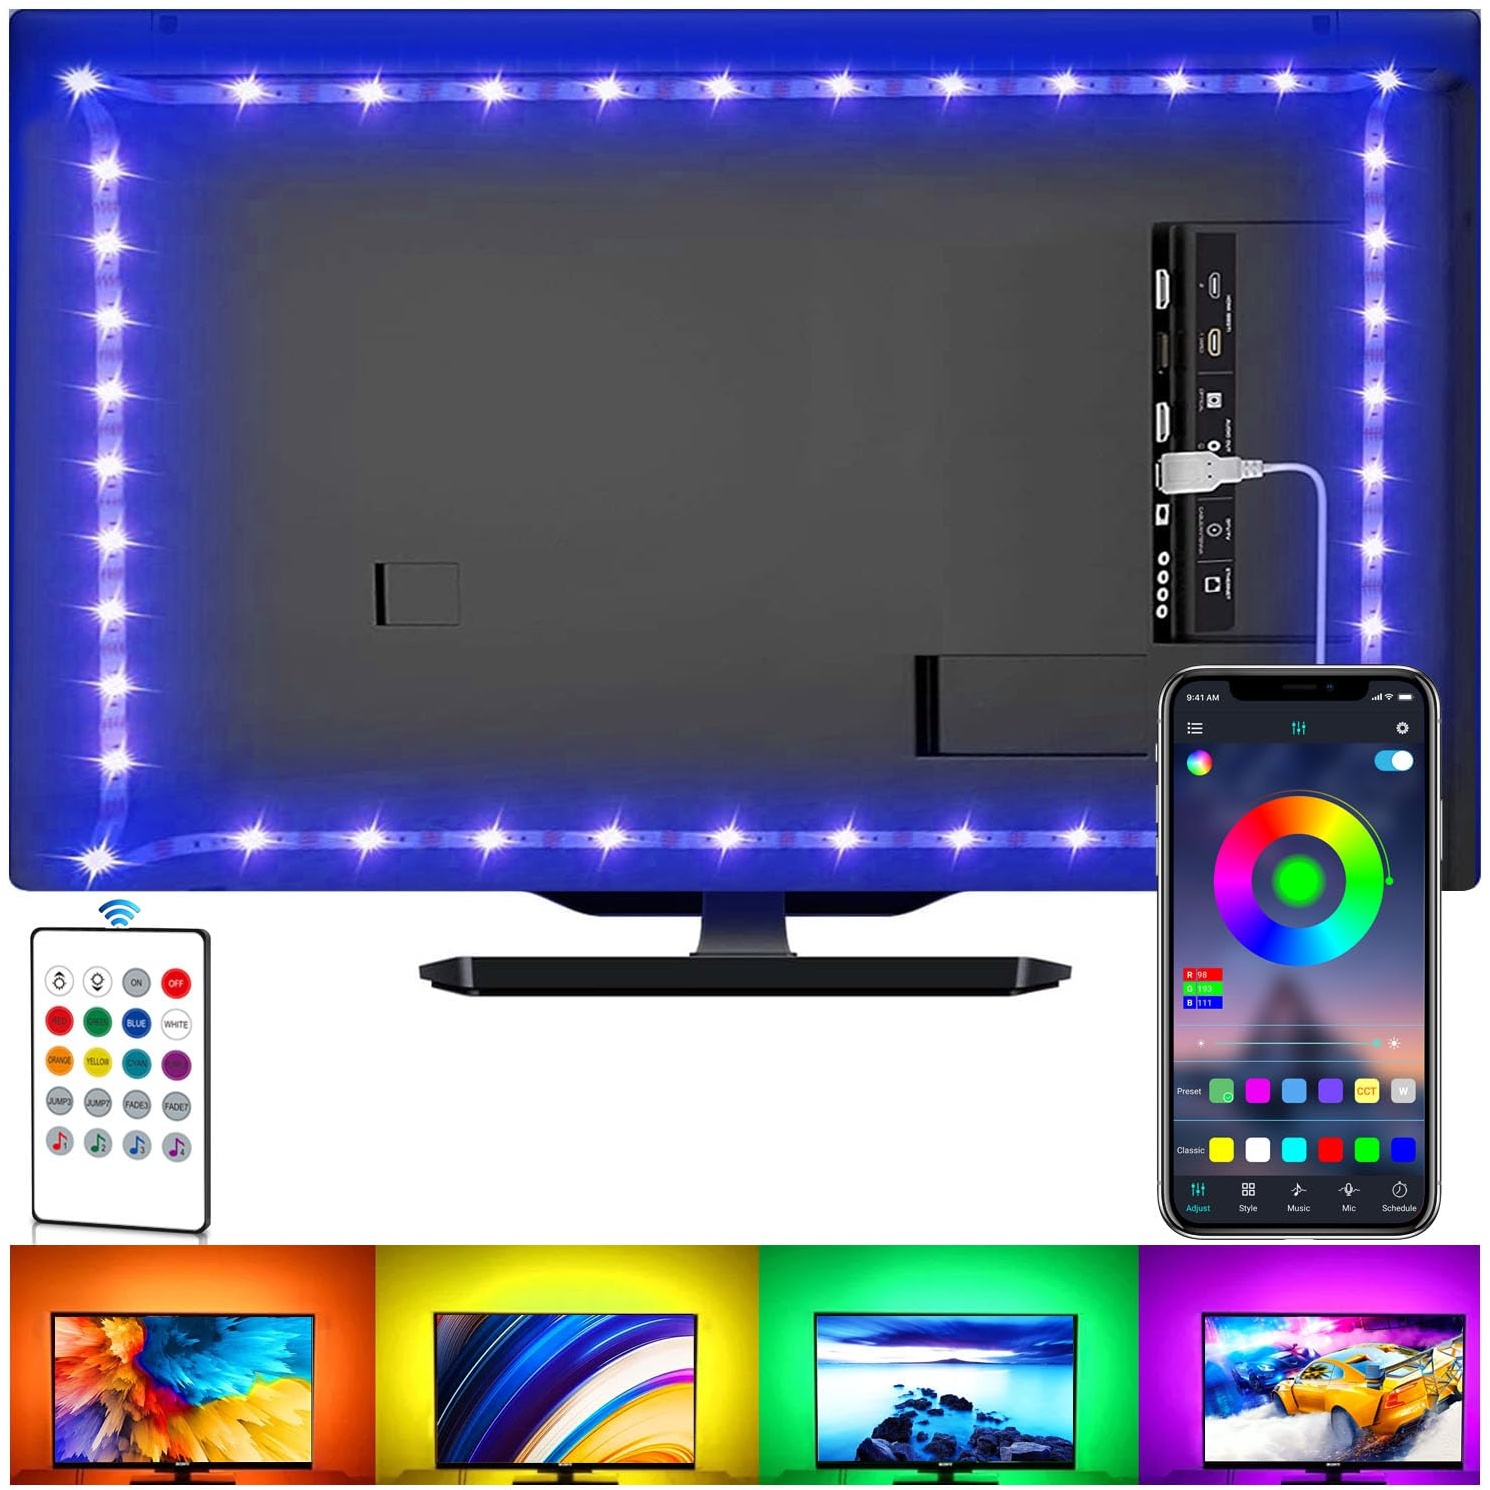 LED-Streifen für TV, USB-TV-Hintergrundbeleuchtungs-Kit mit Fernbedienung, App-Steuerung, Synchronisierung mit Musik, 5050 RGB Smart LED Bias Beleuchtung für HDTV (4 m für 65-75 Zoll Fernseher)